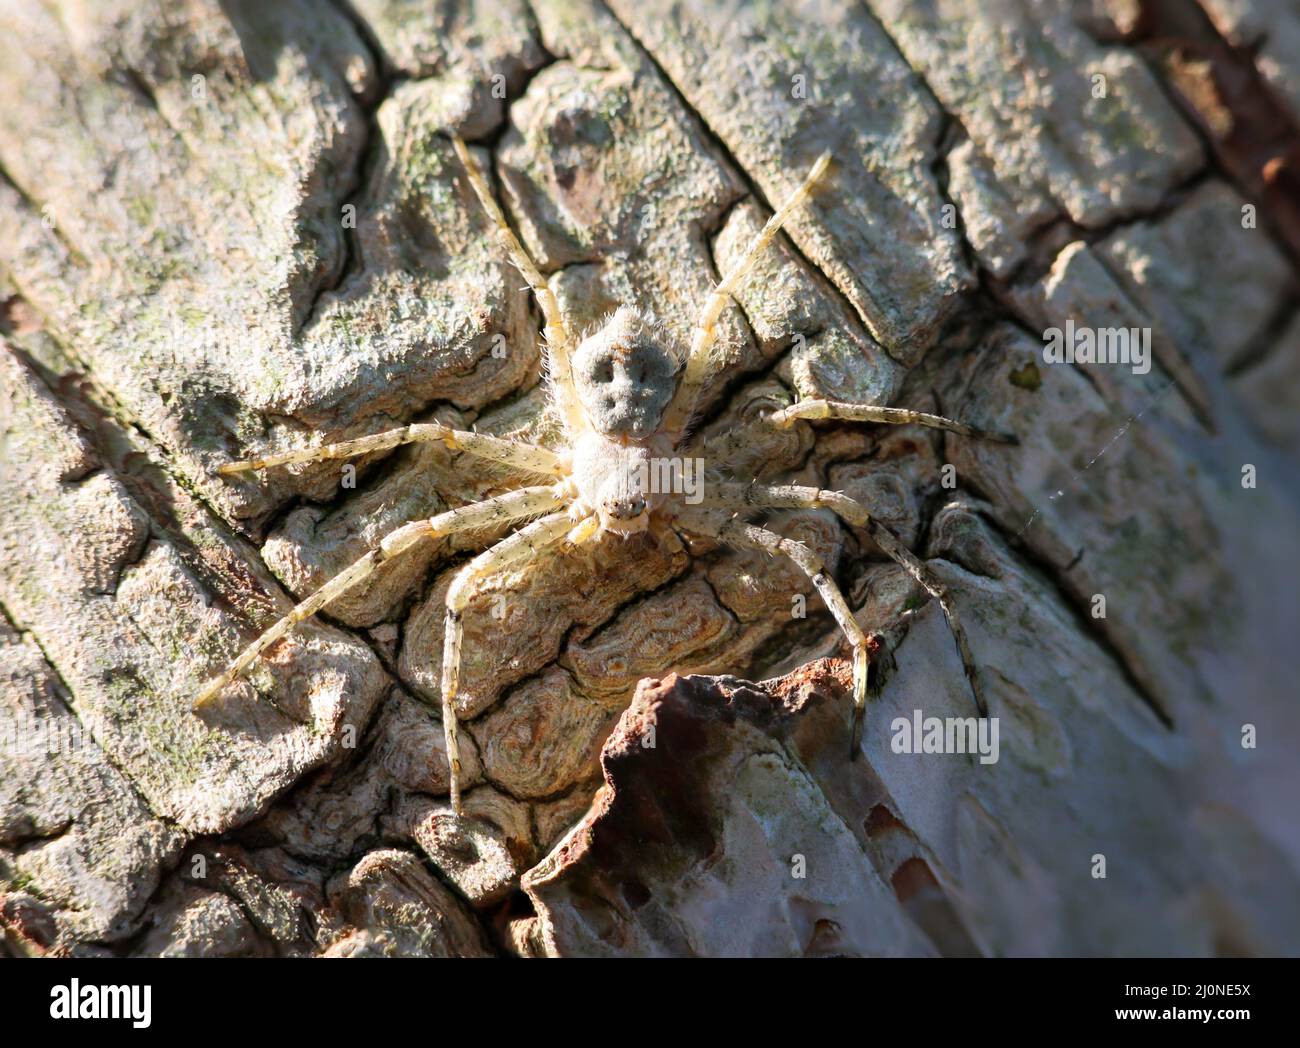 Eine gut getarnte Spinne auf der Rinde einer Birke. Sieht aus wie eine Krabbenspinne. Stockfoto